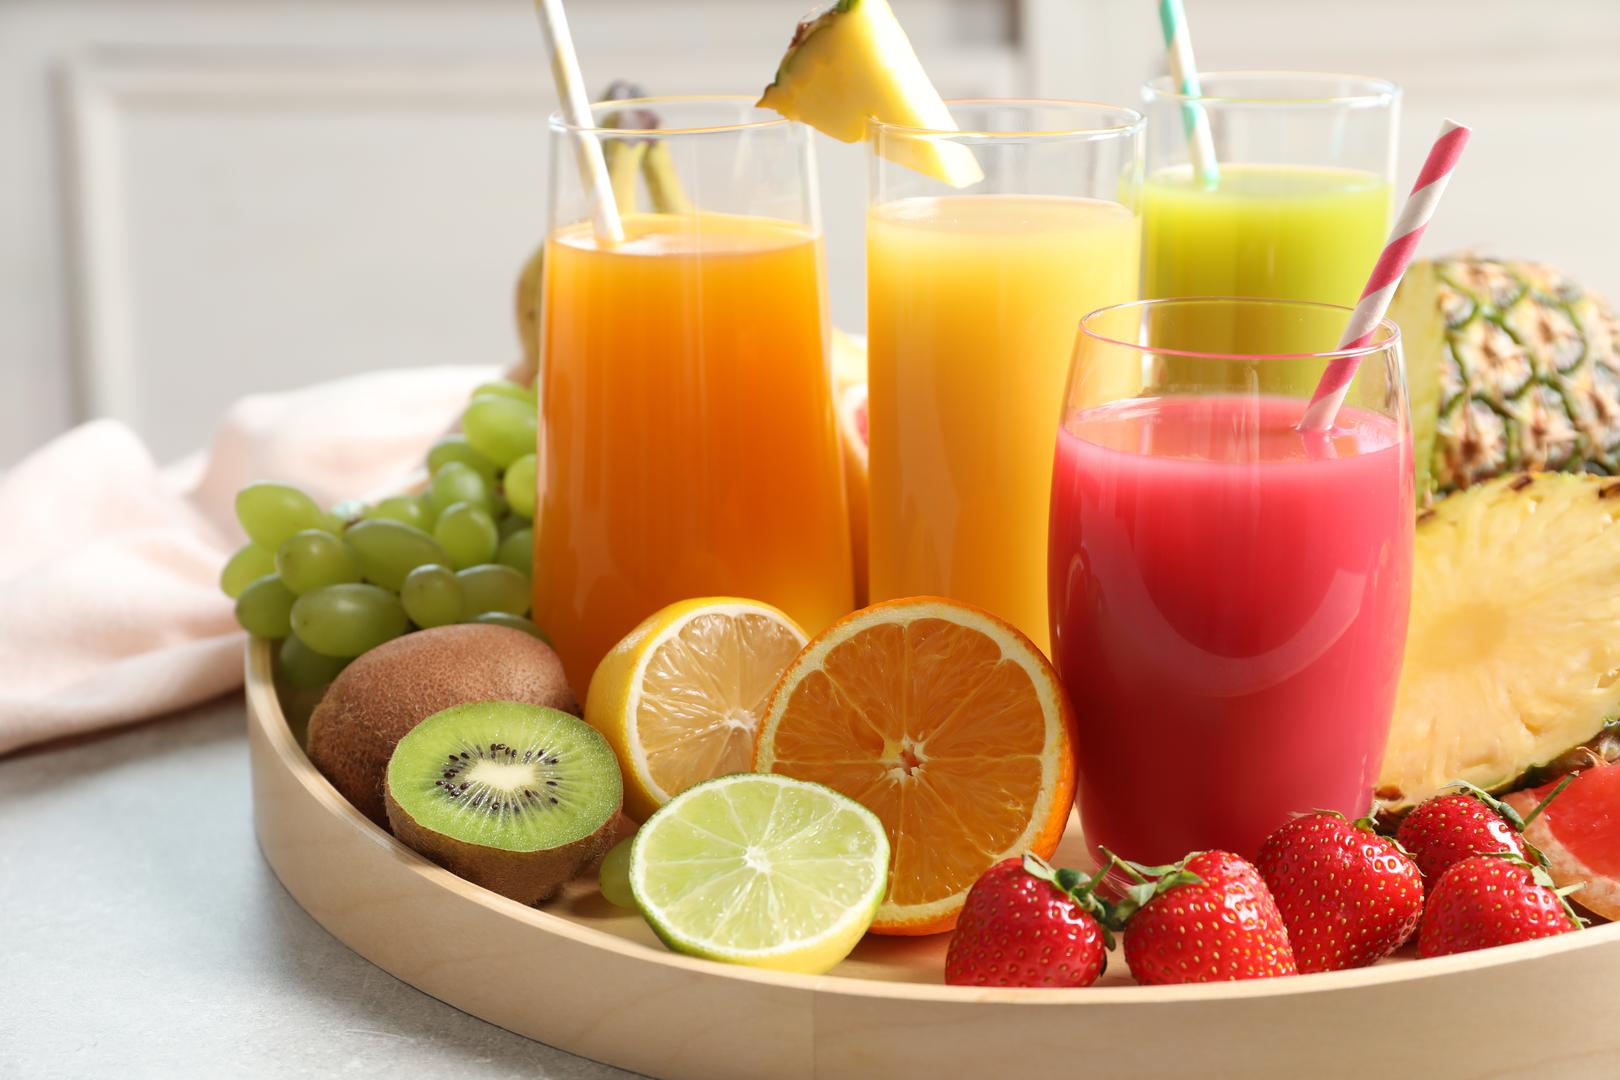 Prirodni voćni sokovi
Prirodni su i puni vitamina C, istina. No, jeste li znali da samo jedna čaša prirodnog voćnog soka sadrži čak 36 grama šećera? Većina tog šećera dolazi iz fruktoze koja je idealna za stvaranje sala na trbuhu.